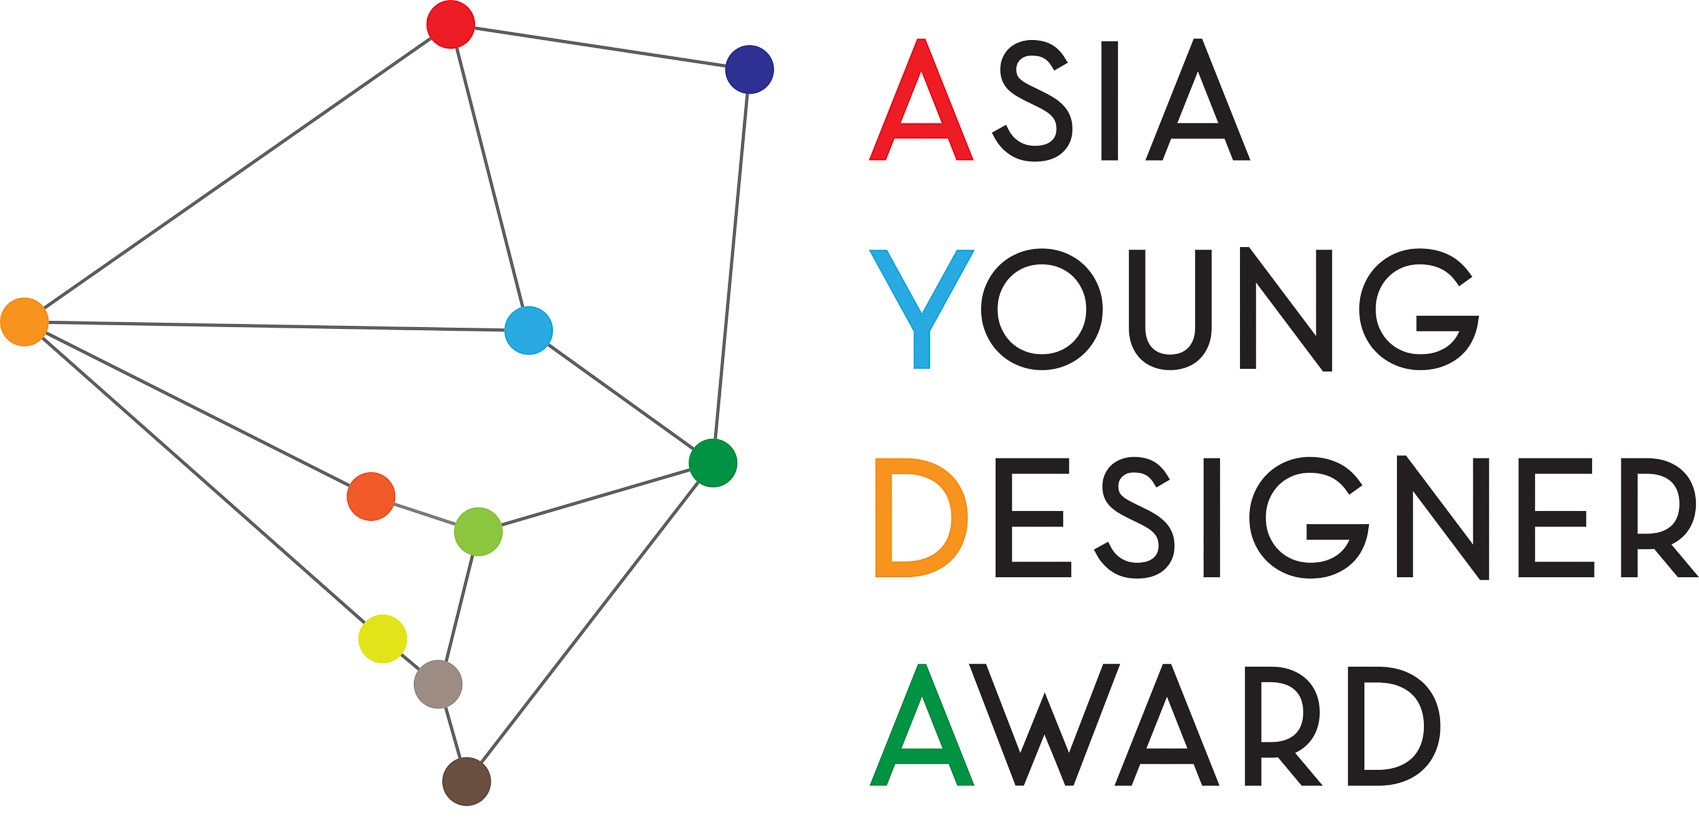 فراخوان دومین مسابقه دانشجویی جایزه طراح جوان آسیا در ایران اعلام شد